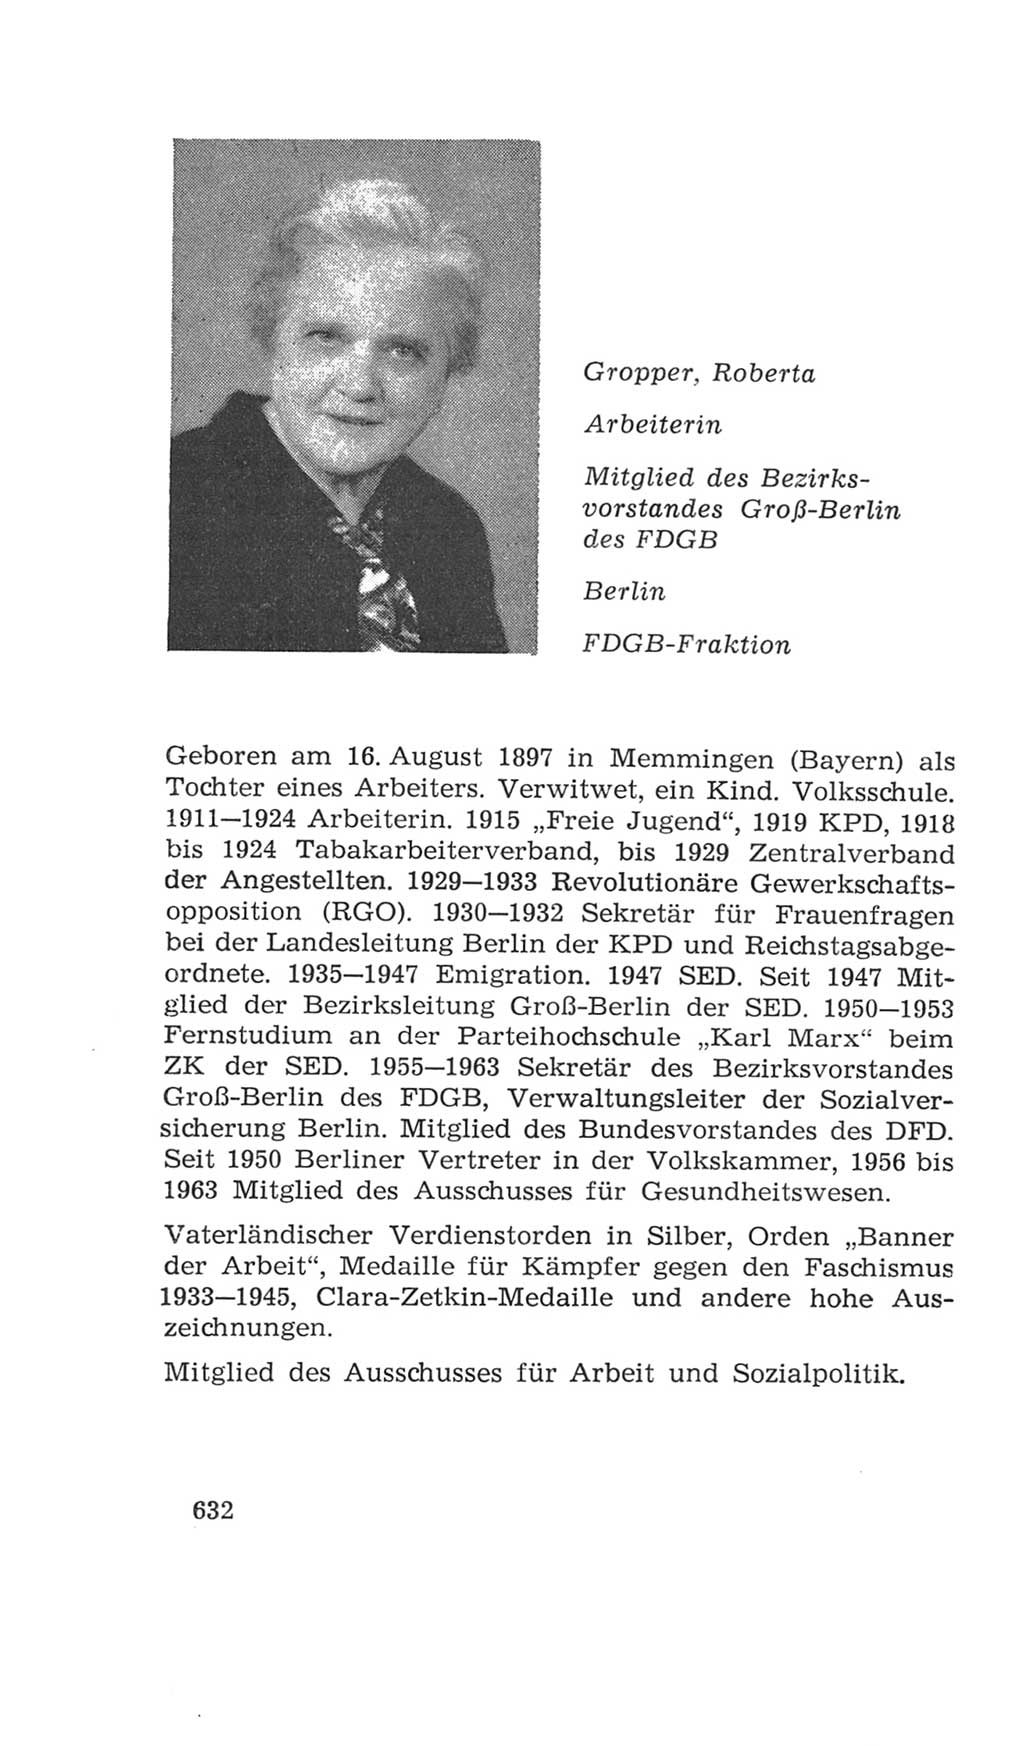 Volkskammer (VK) der Deutschen Demokratischen Republik (DDR), 4. Wahlperiode 1963-1967, Seite 632 (VK. DDR 4. WP. 1963-1967, S. 632)